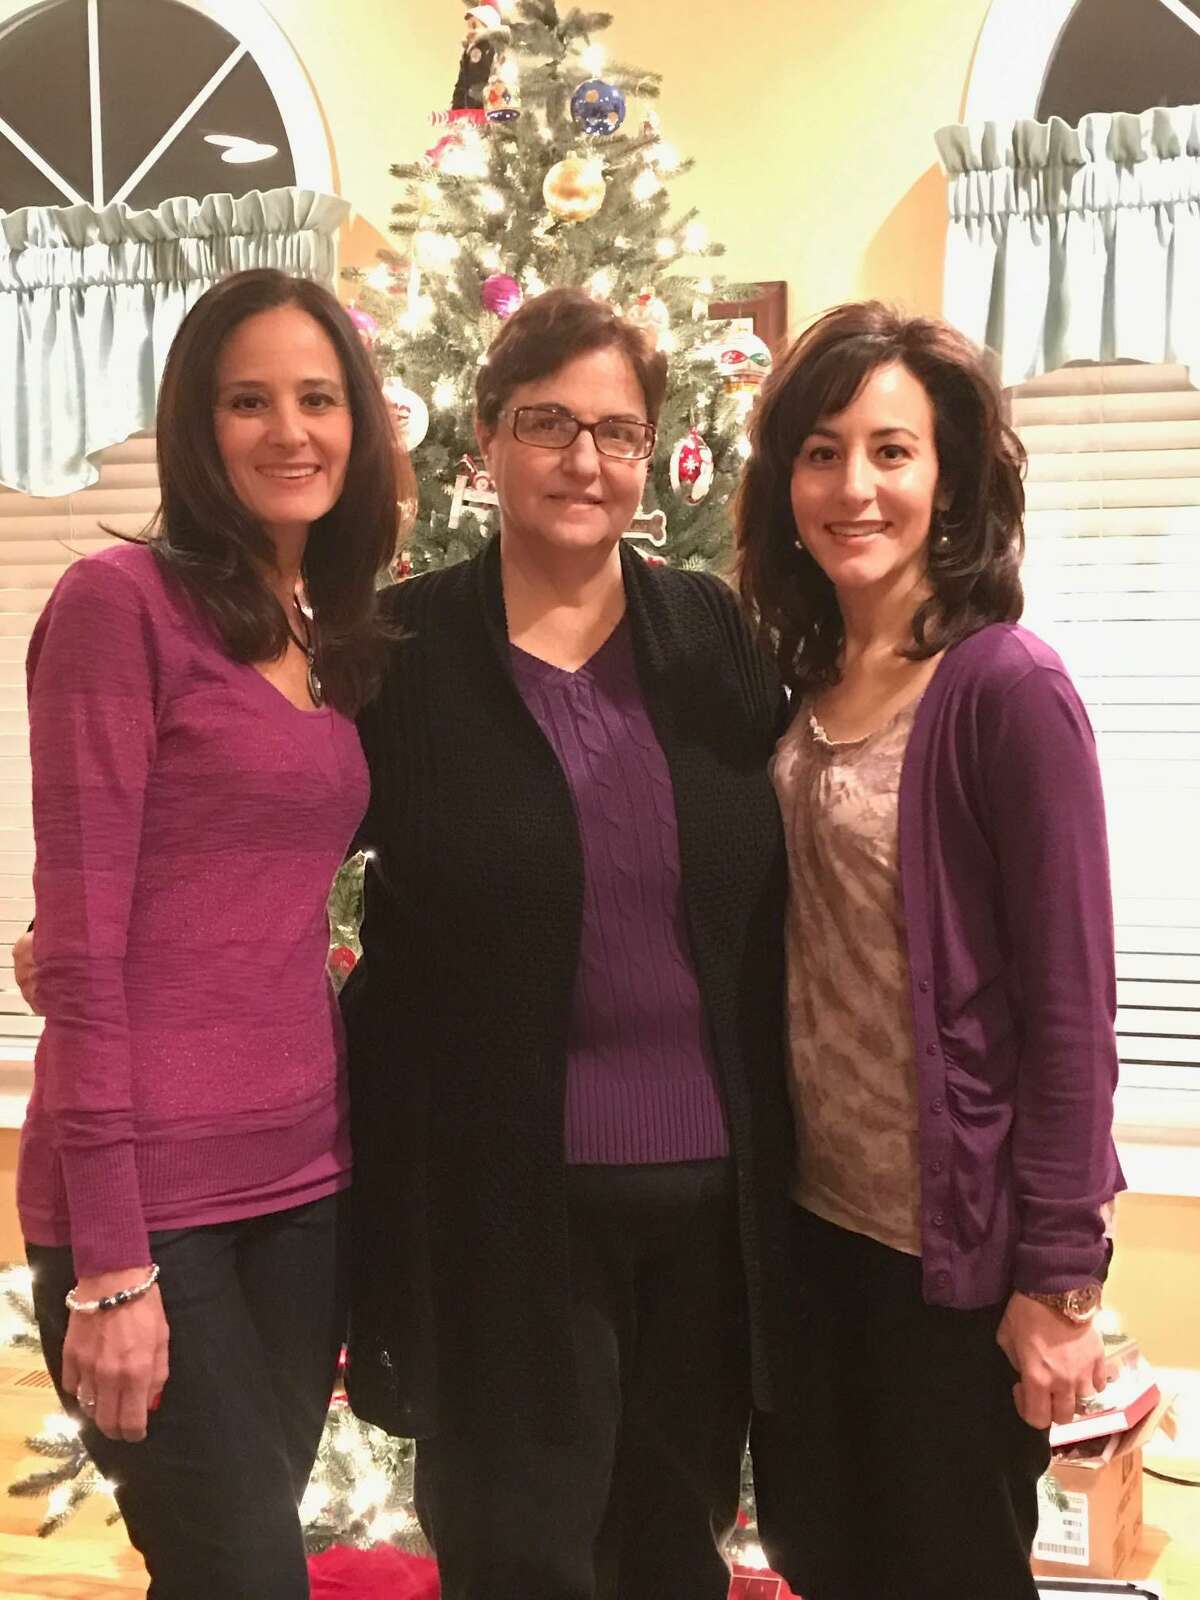 Carol Proto, center, with her daughters, Alicia Richitelli, left, and Maria DeMattie, in happier times.